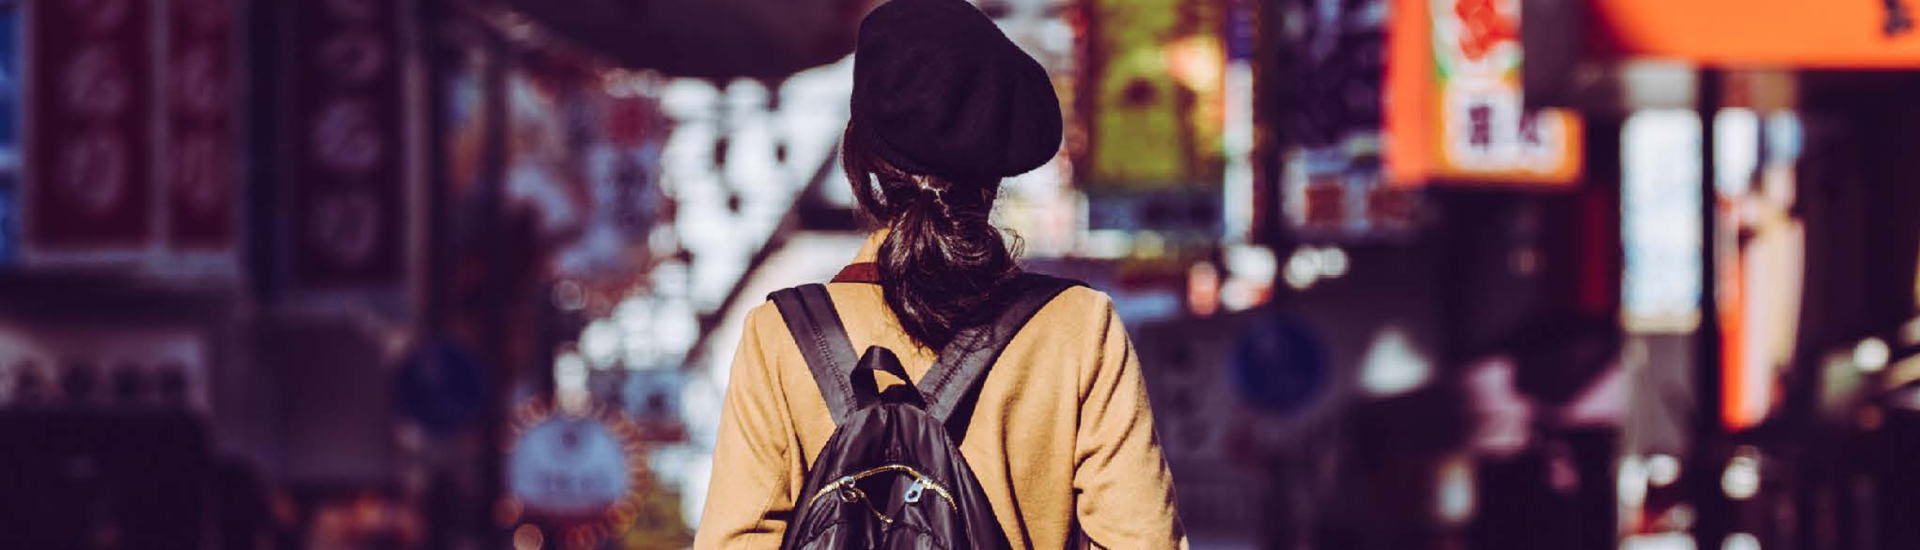 Foto de uma garota de costas vestindo um casaco mostarda, boina preta e mochila em uma paisagem urbana.